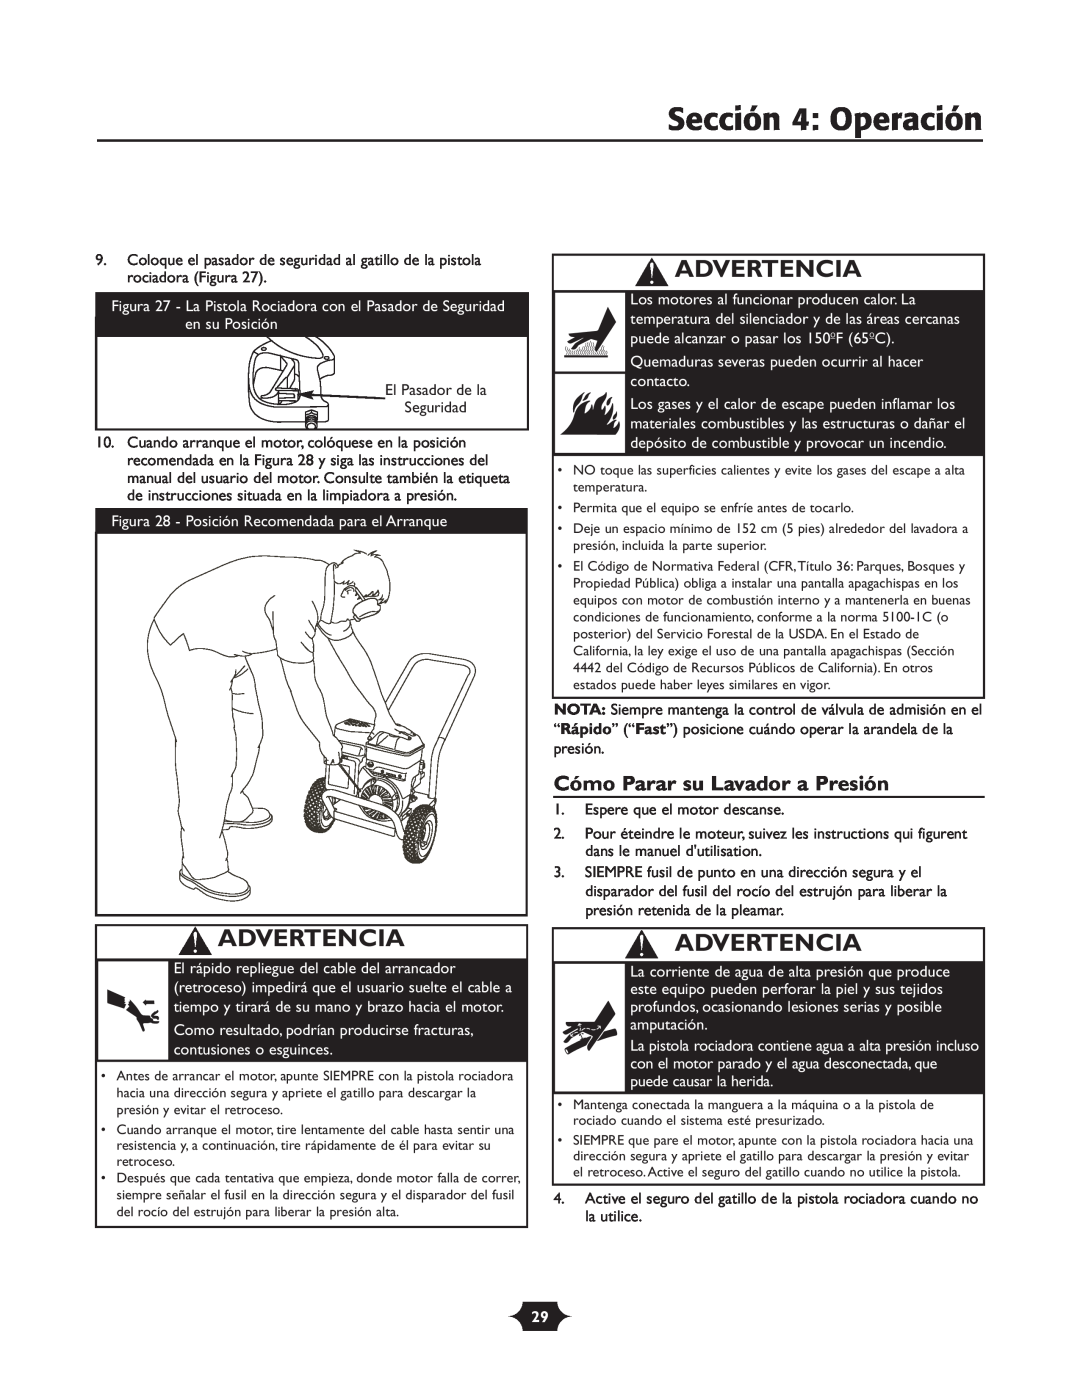 Troy-Bilt 020242-4 manual Sección 4 Operación, Cómo Parar su Lavador a Presión, Advertencia 